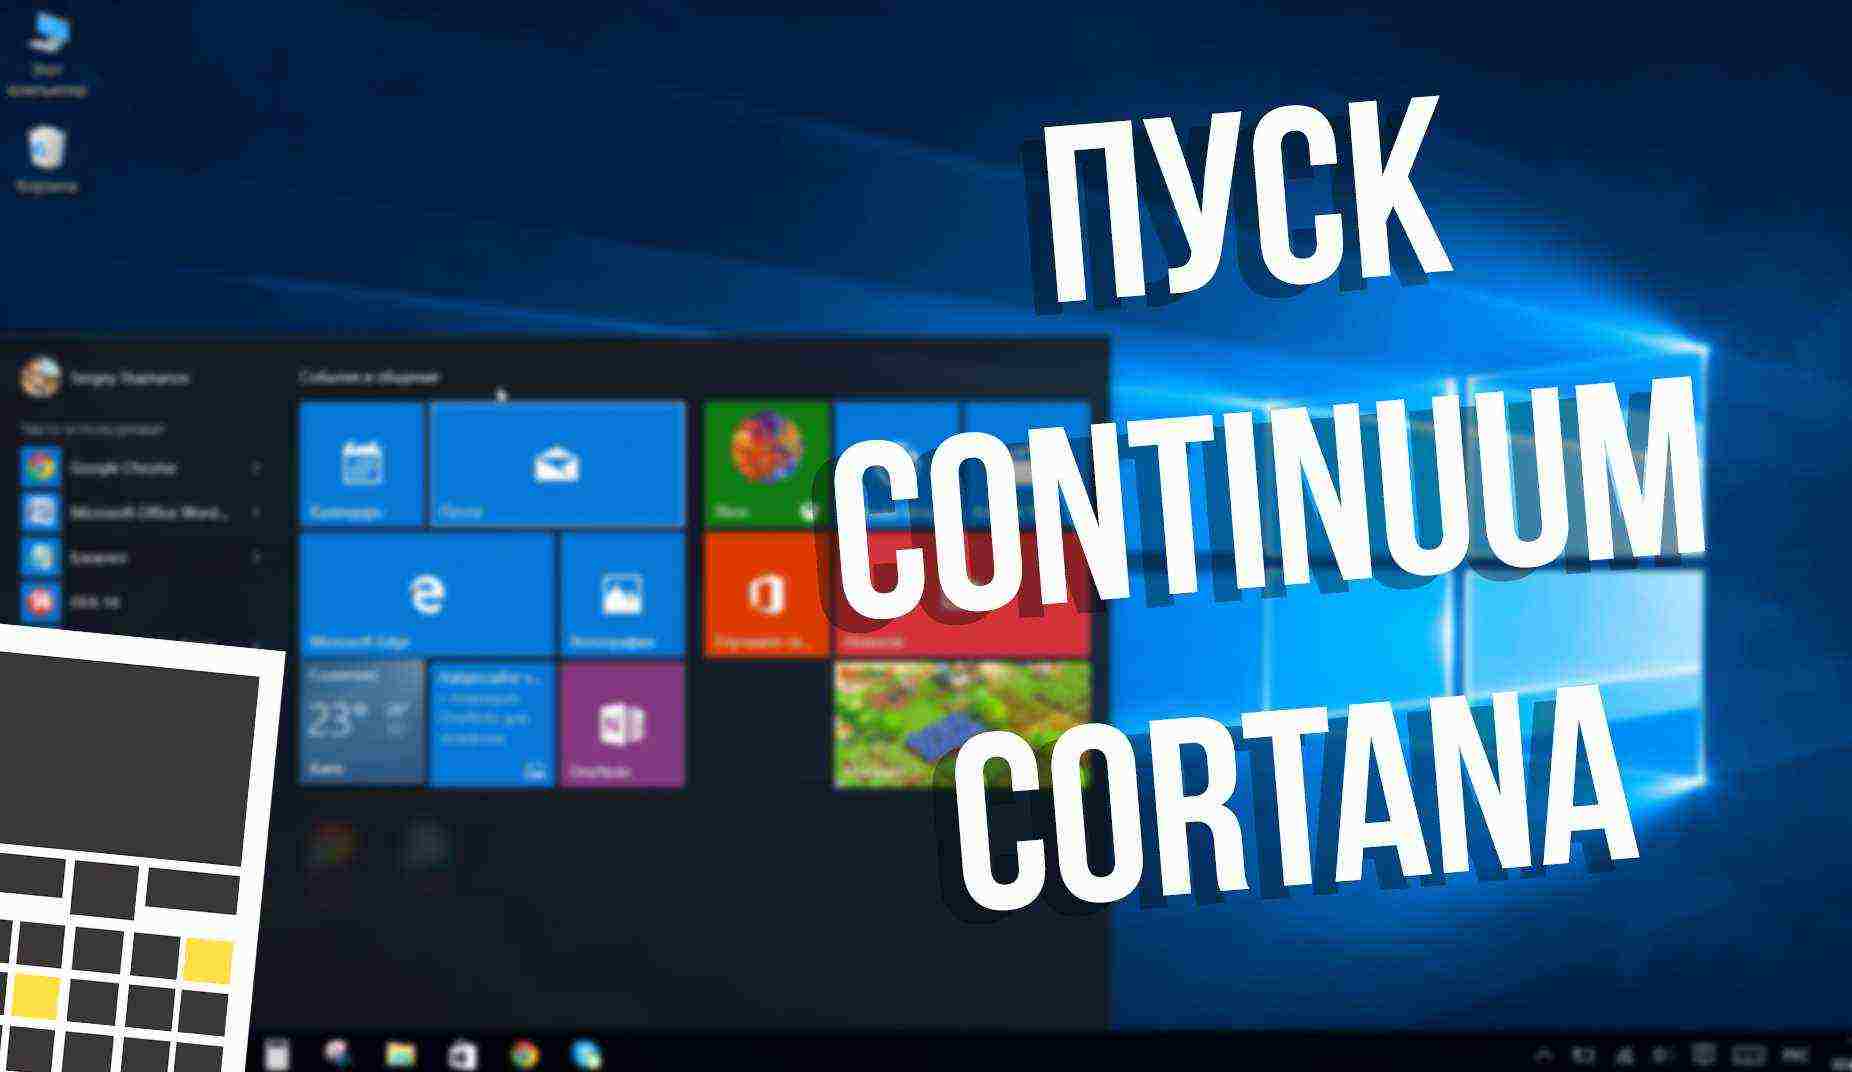 Windows 10: меню «Пуск», Continuum и новый поиск